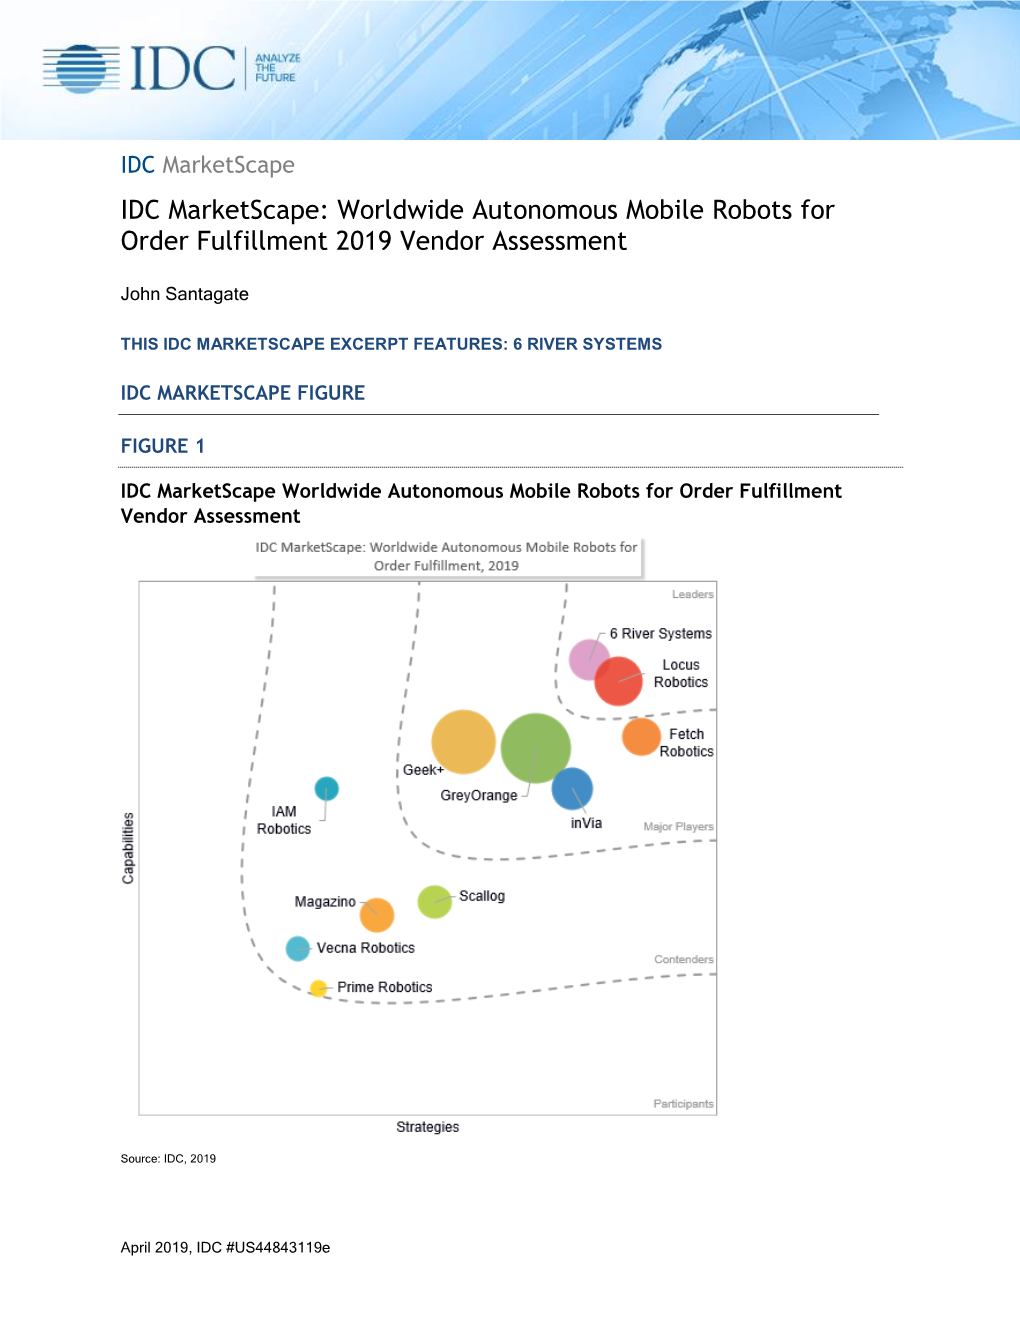 IDC Marketscape: Worldwide Autonomous Mobile Robots for Order Fulfillment 2019 Vendor Assessment